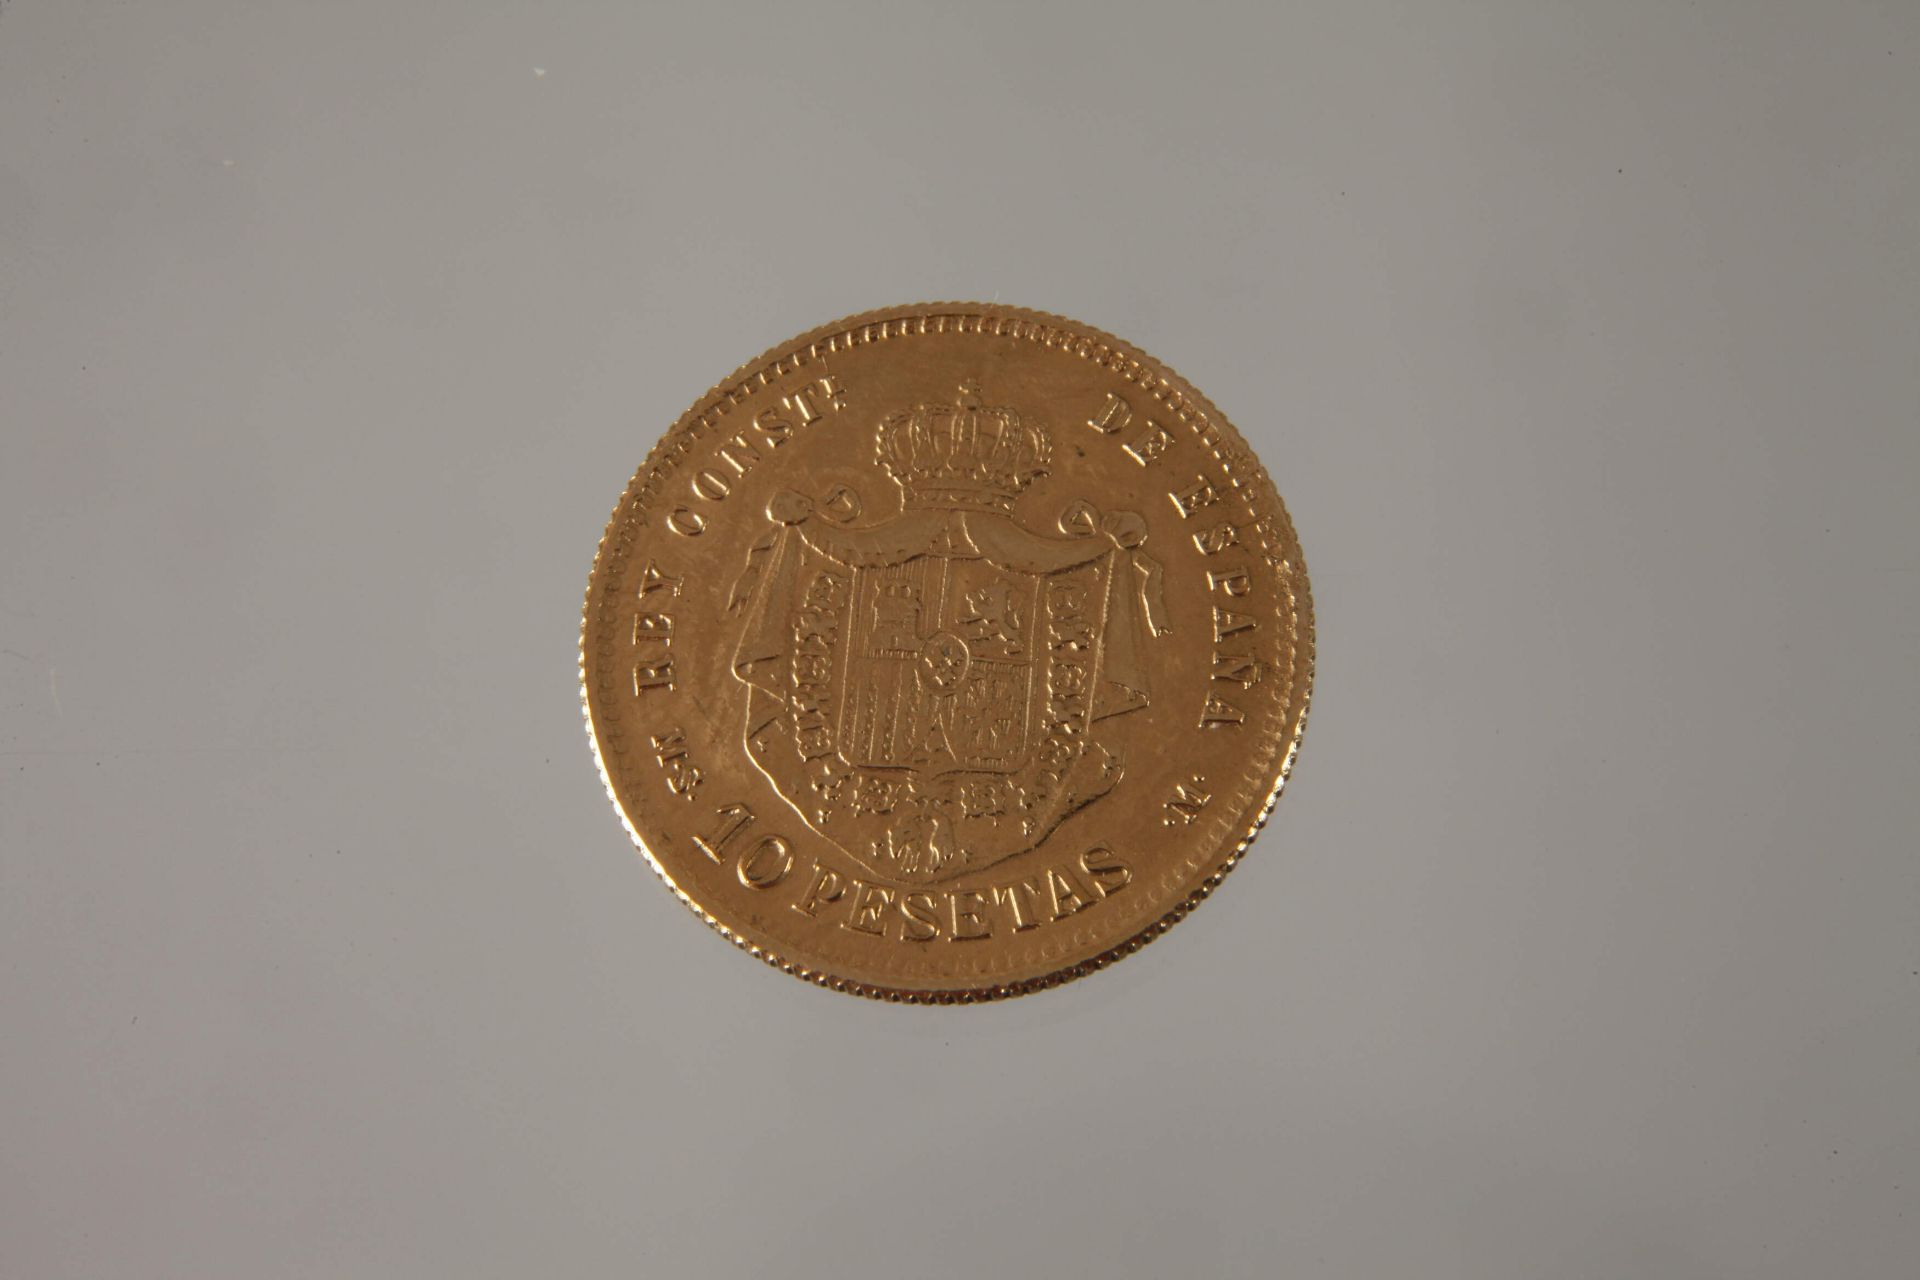 10 pesetas gold - Image 3 of 3